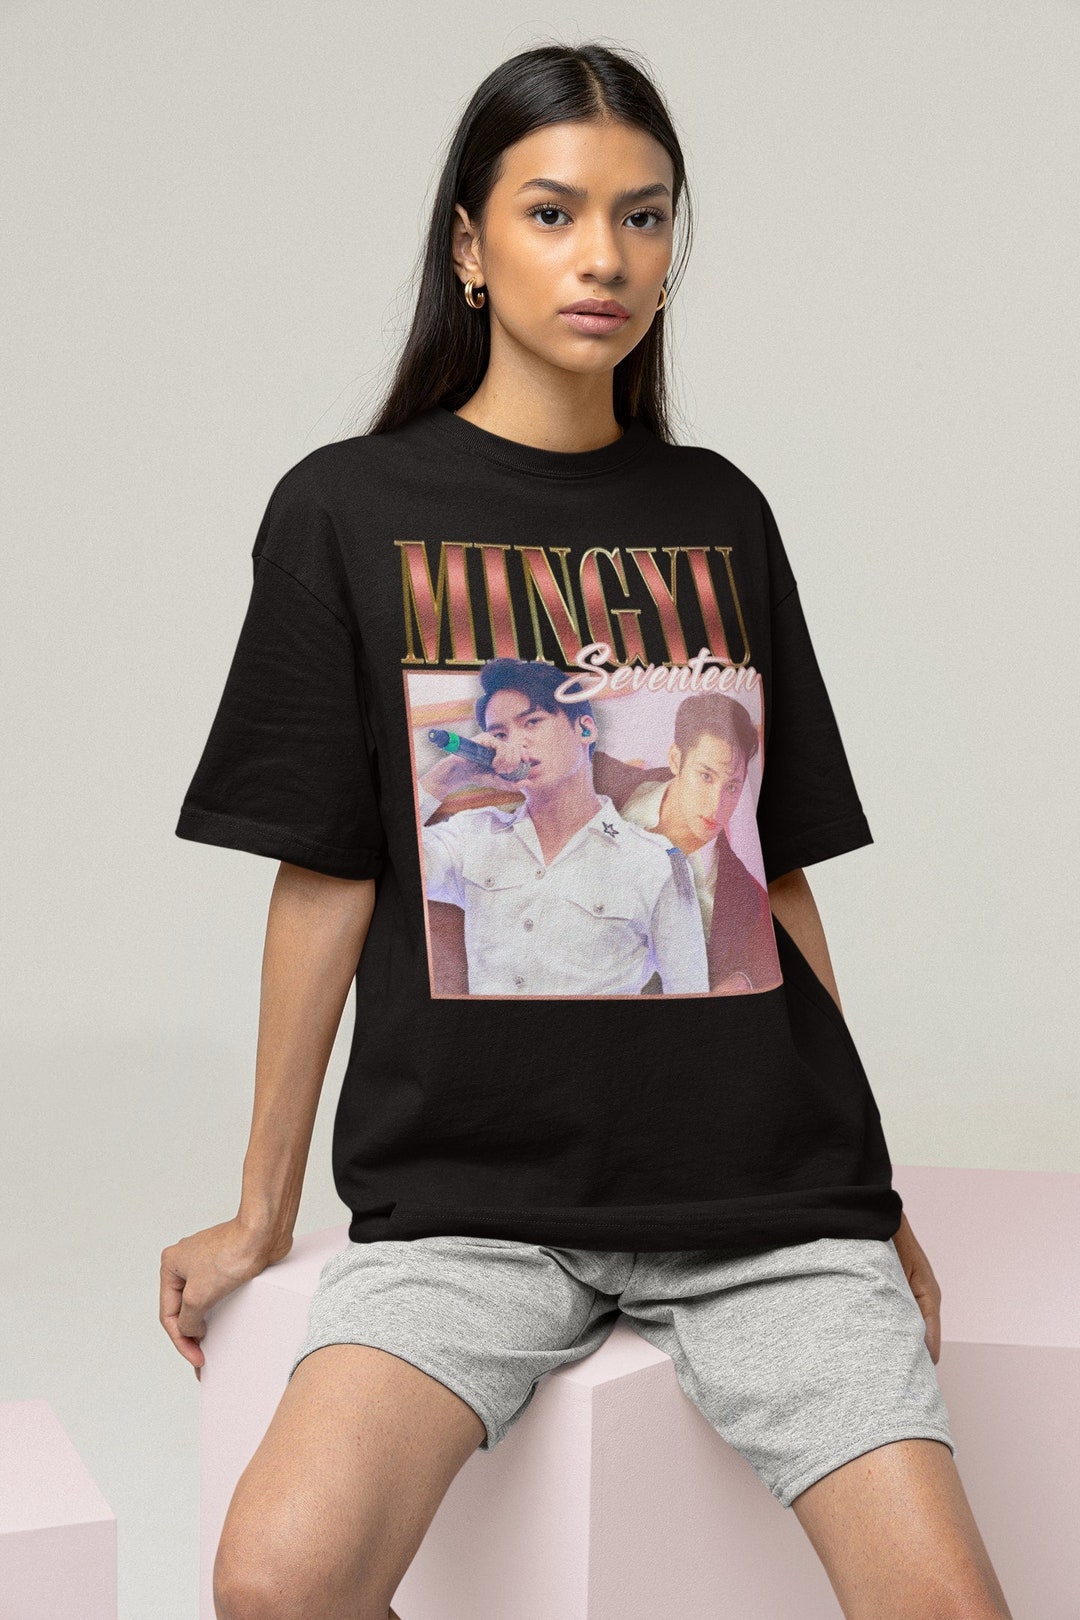 Seventeen Mingyu Retro Bootleg T-shirt, Seventeen Shirt, Kpop T-shirt ...